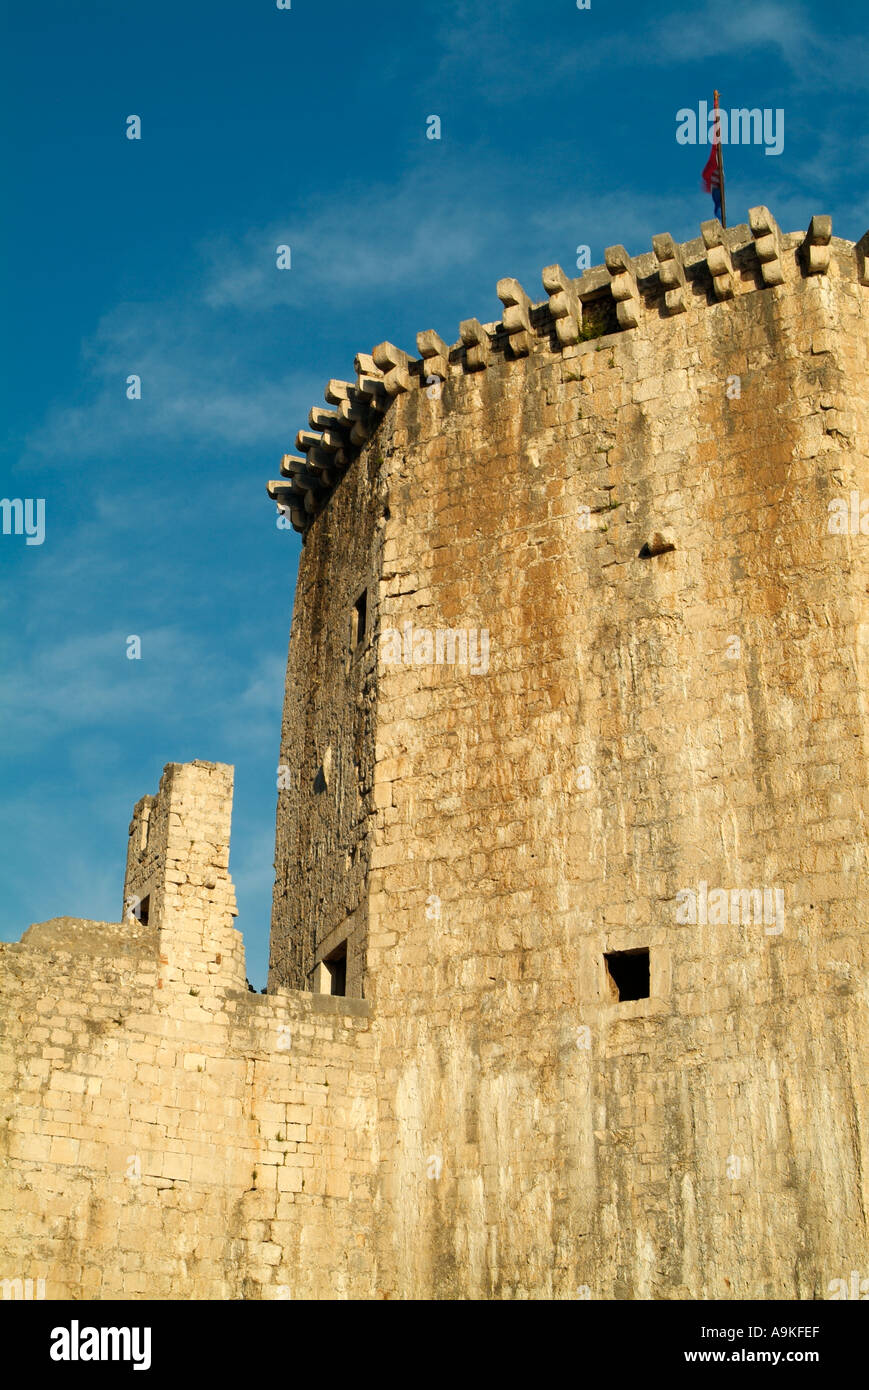 Château de Camerlingue dans la ville médiévale de Trogir, sur la côte dalmate de la Croatie Banque D'Images